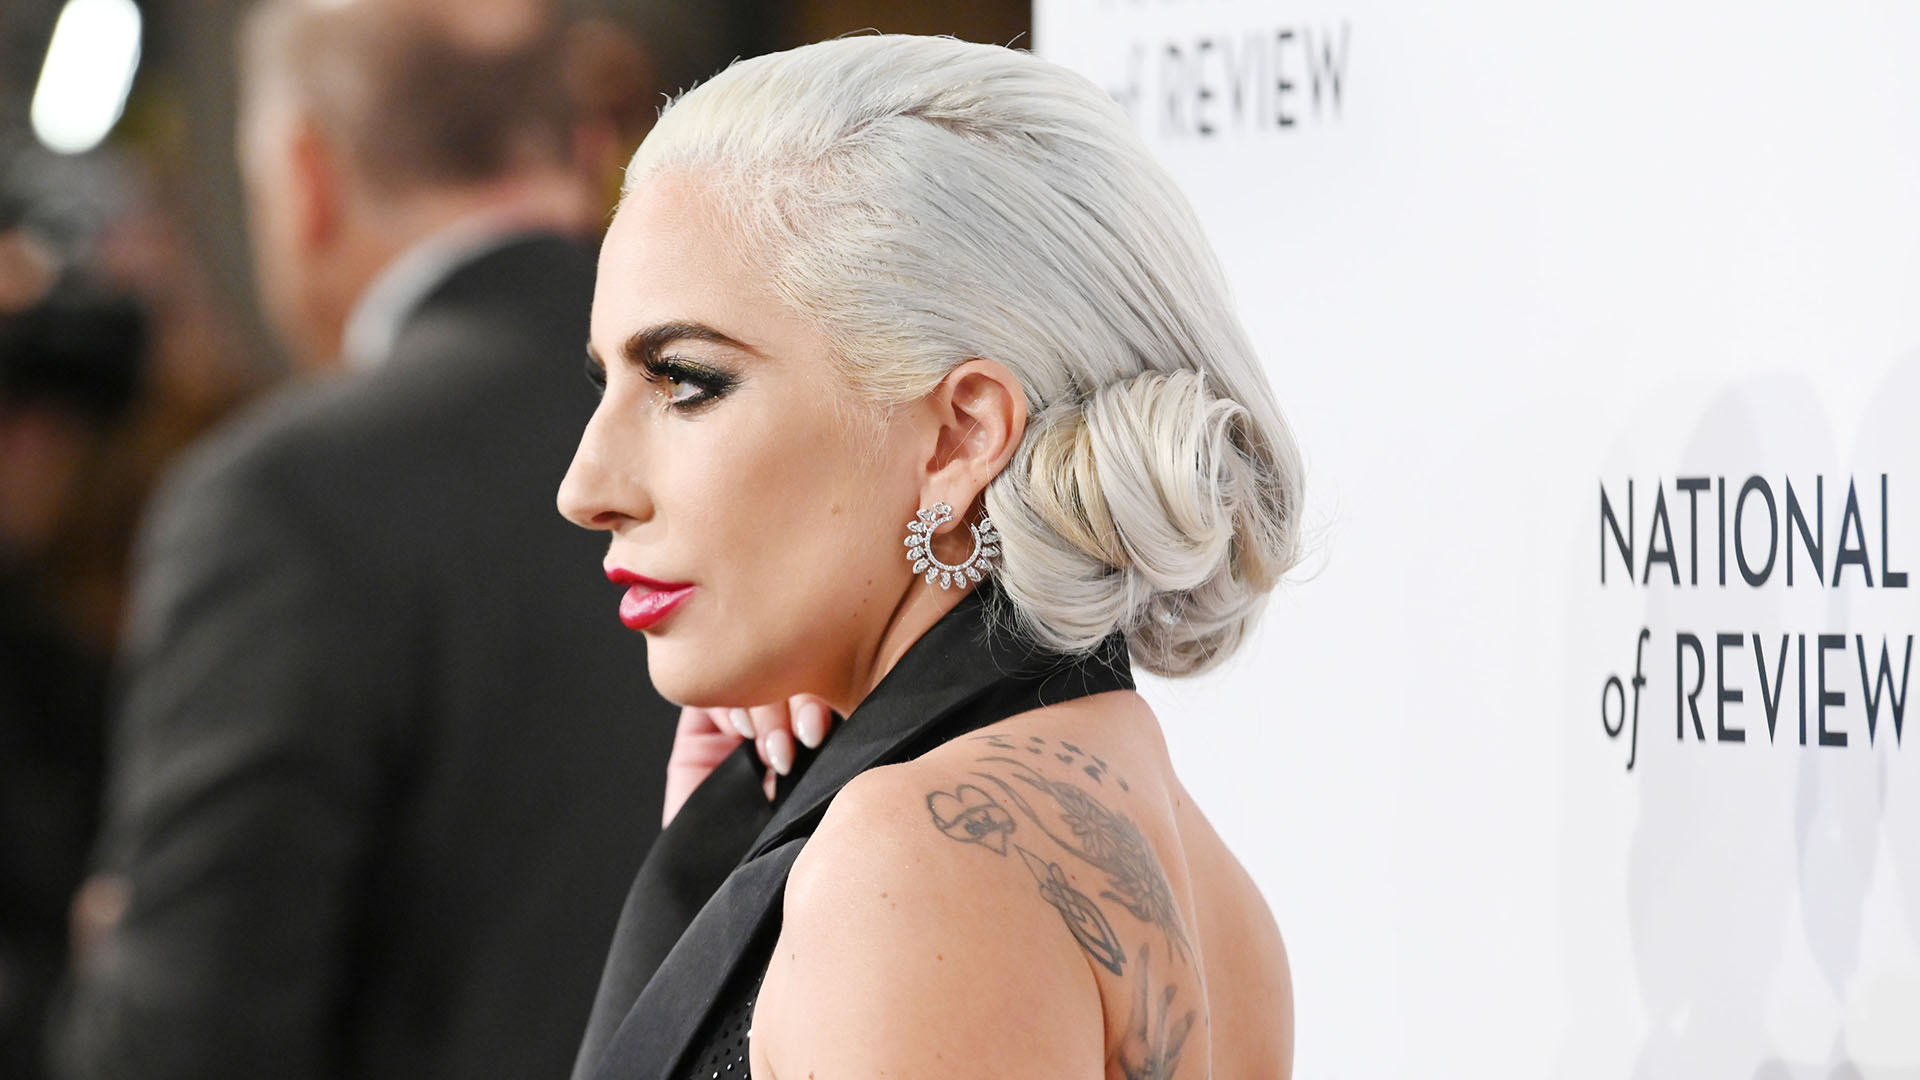 La cantante estadounidense Lady Gaga superó la depresión y creó una fundación para ayudar a adolescentes y jóvenes /Getty Images for National Board of Review/AFP